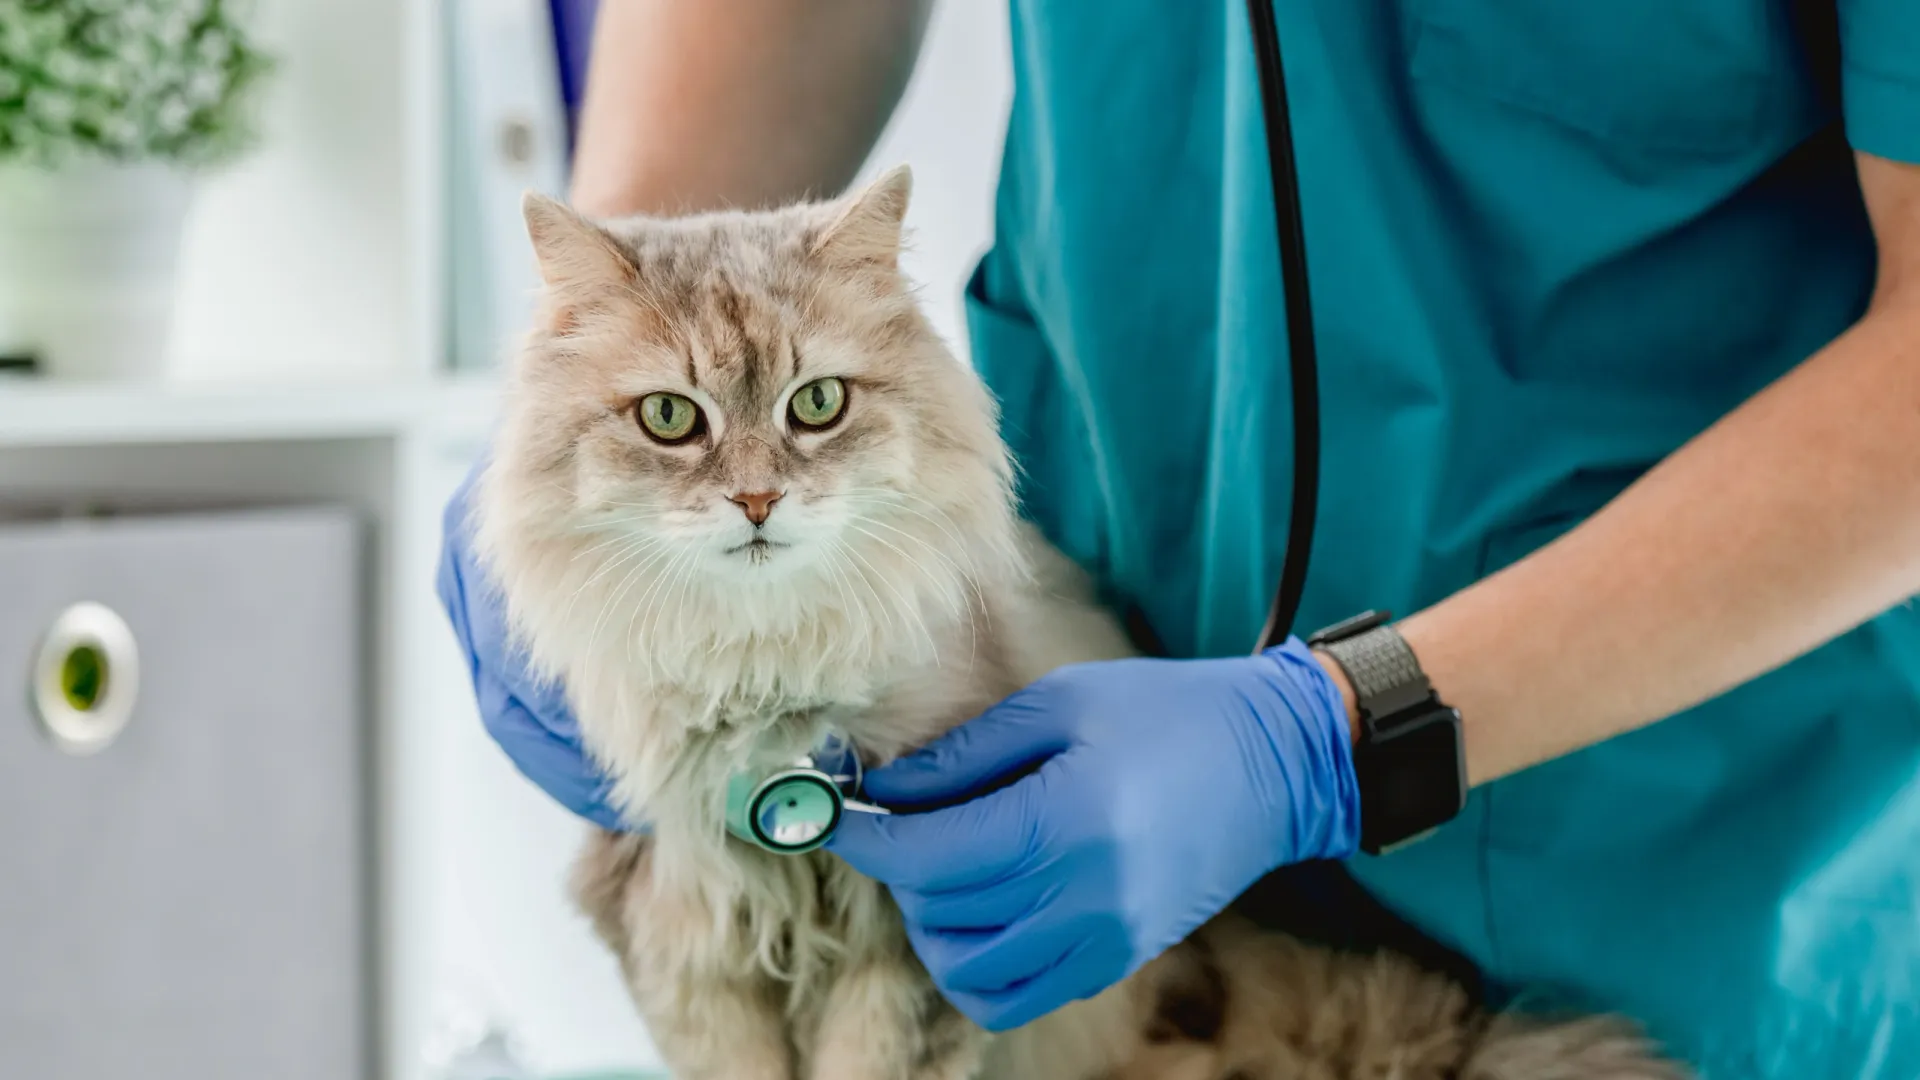 Время работает против кота, проглотившего «дождик». Лучше не откладывать визит к ветеринару. Фото: Tatyana Vyc / Shutterstock / Fotodom